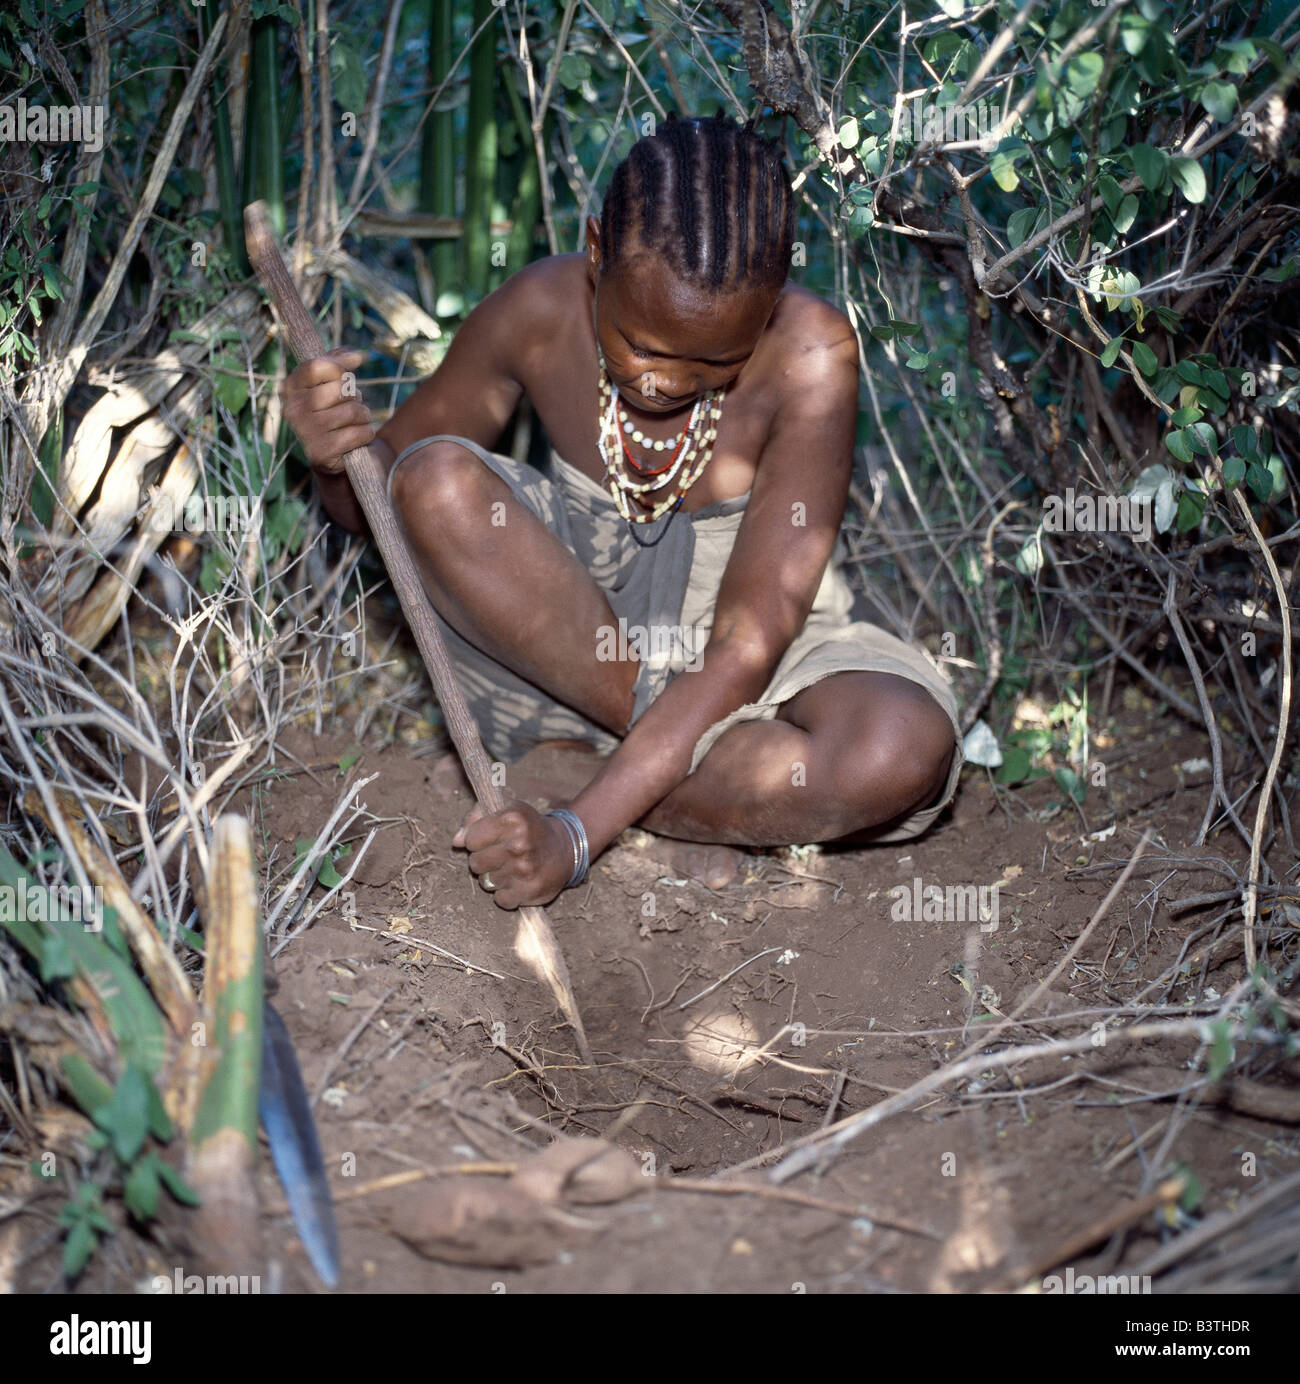 La Tanzanie, Arusha, le lac Eyasi. Une femme Hadza creuse pour les tubercules comestibles avec un bâton.Les Hadzabe sont une communauté forte de milliers de chasseurs-cueilleurs qui ont vécu dans le bassin du lac Eyasi depuis des siècles. Ils sont l'un des quatre ou cinq sociétés dans le monde qui continuent de gagner leur vie principalement de ressources sauvages. Banque D'Images